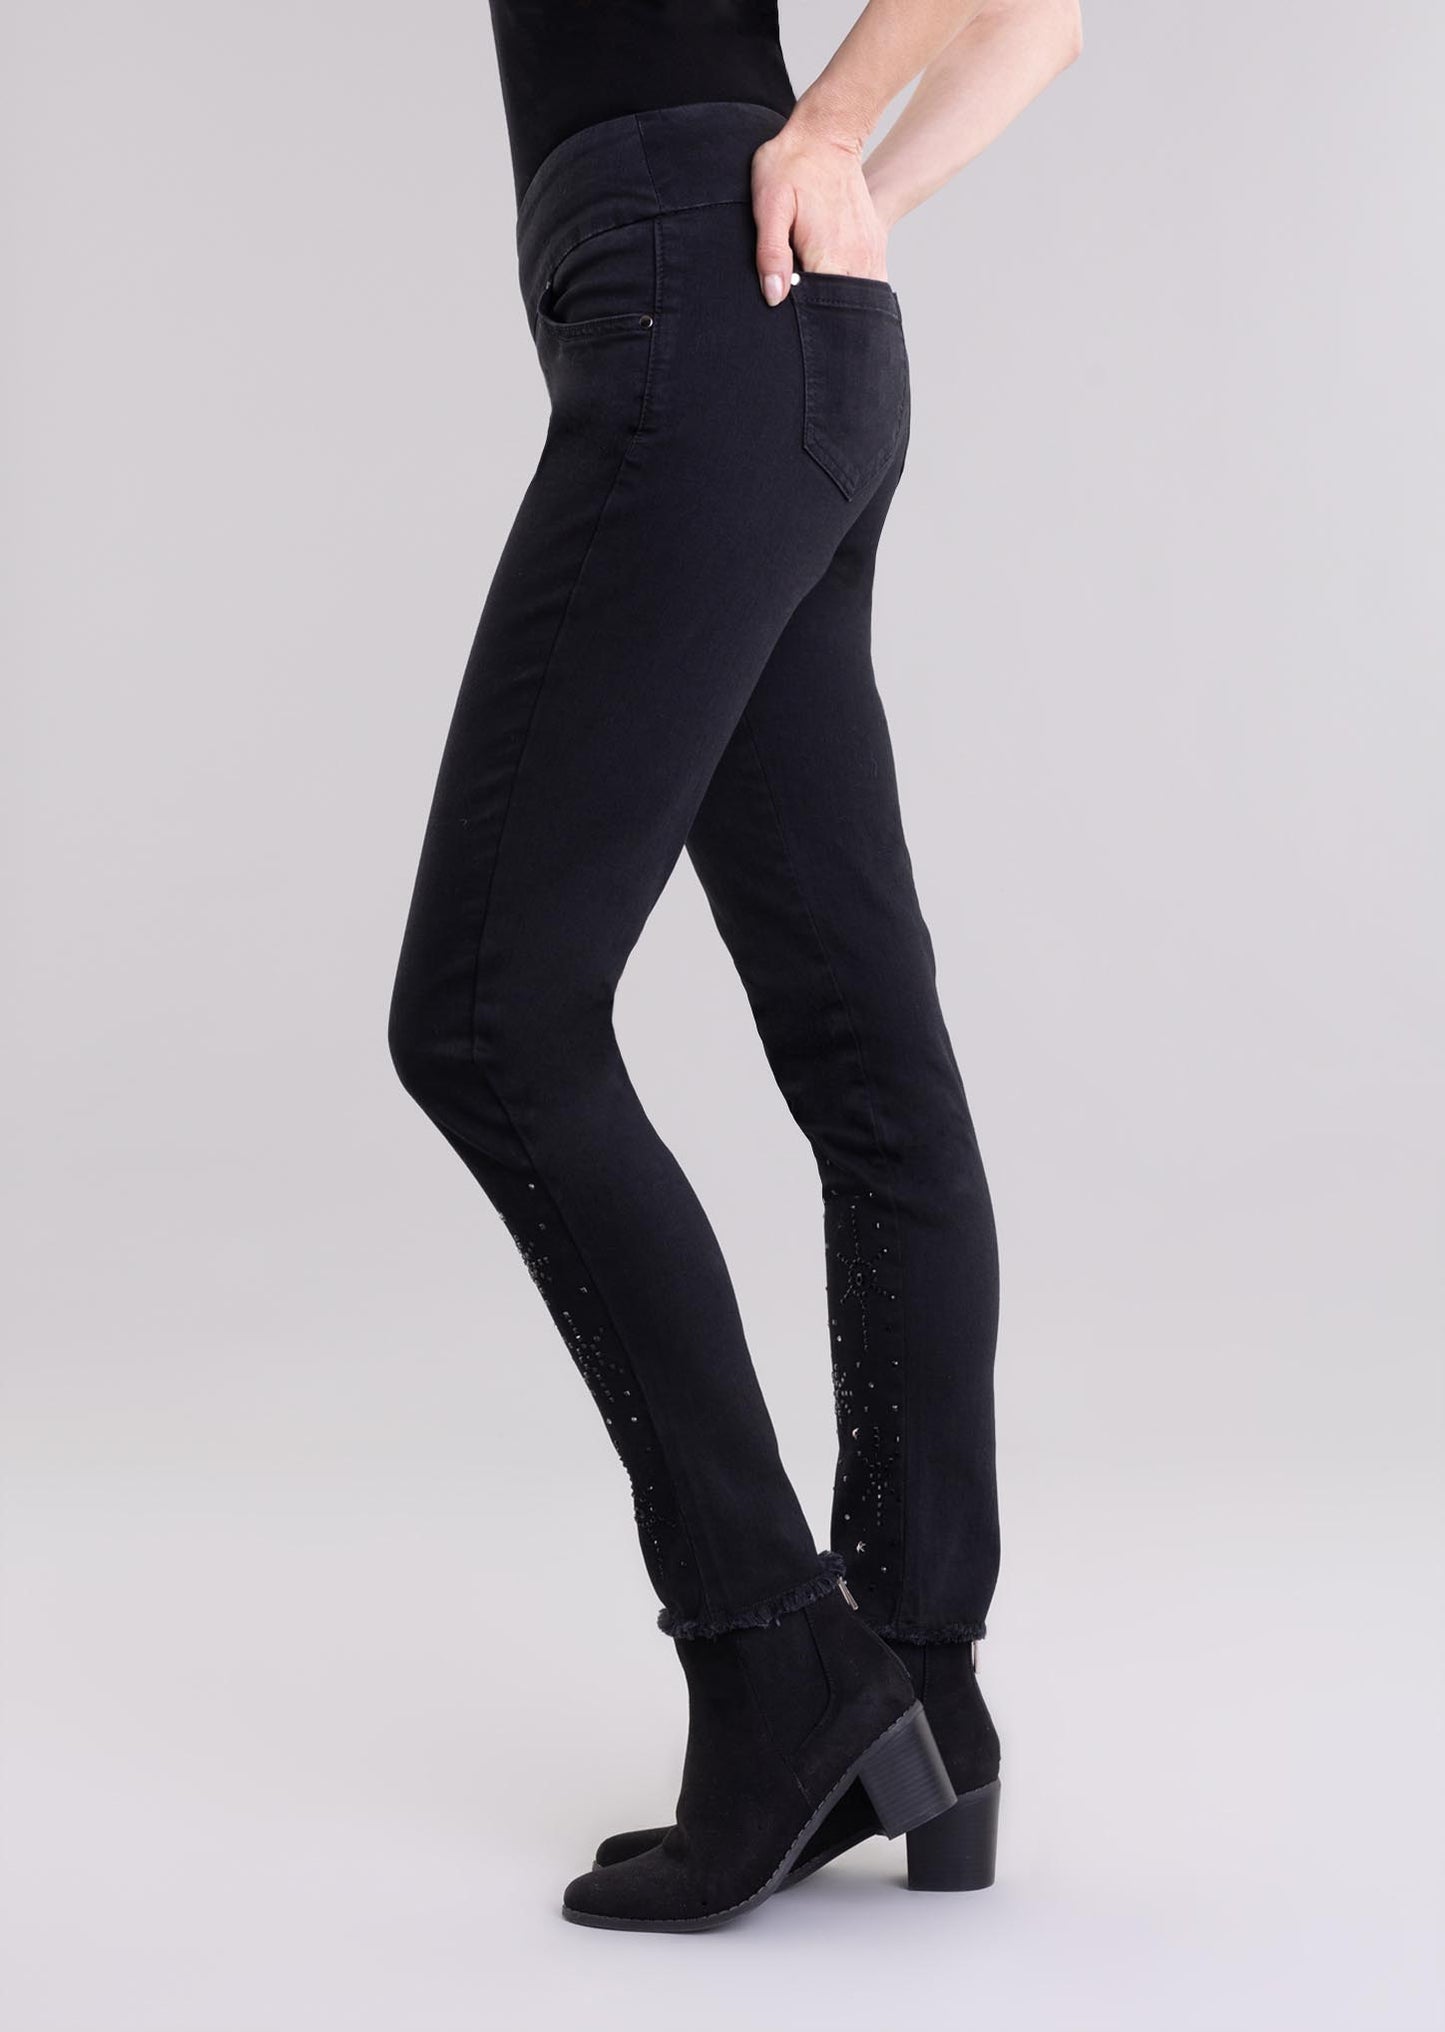 Lisette L Jeans 455848-01 Black